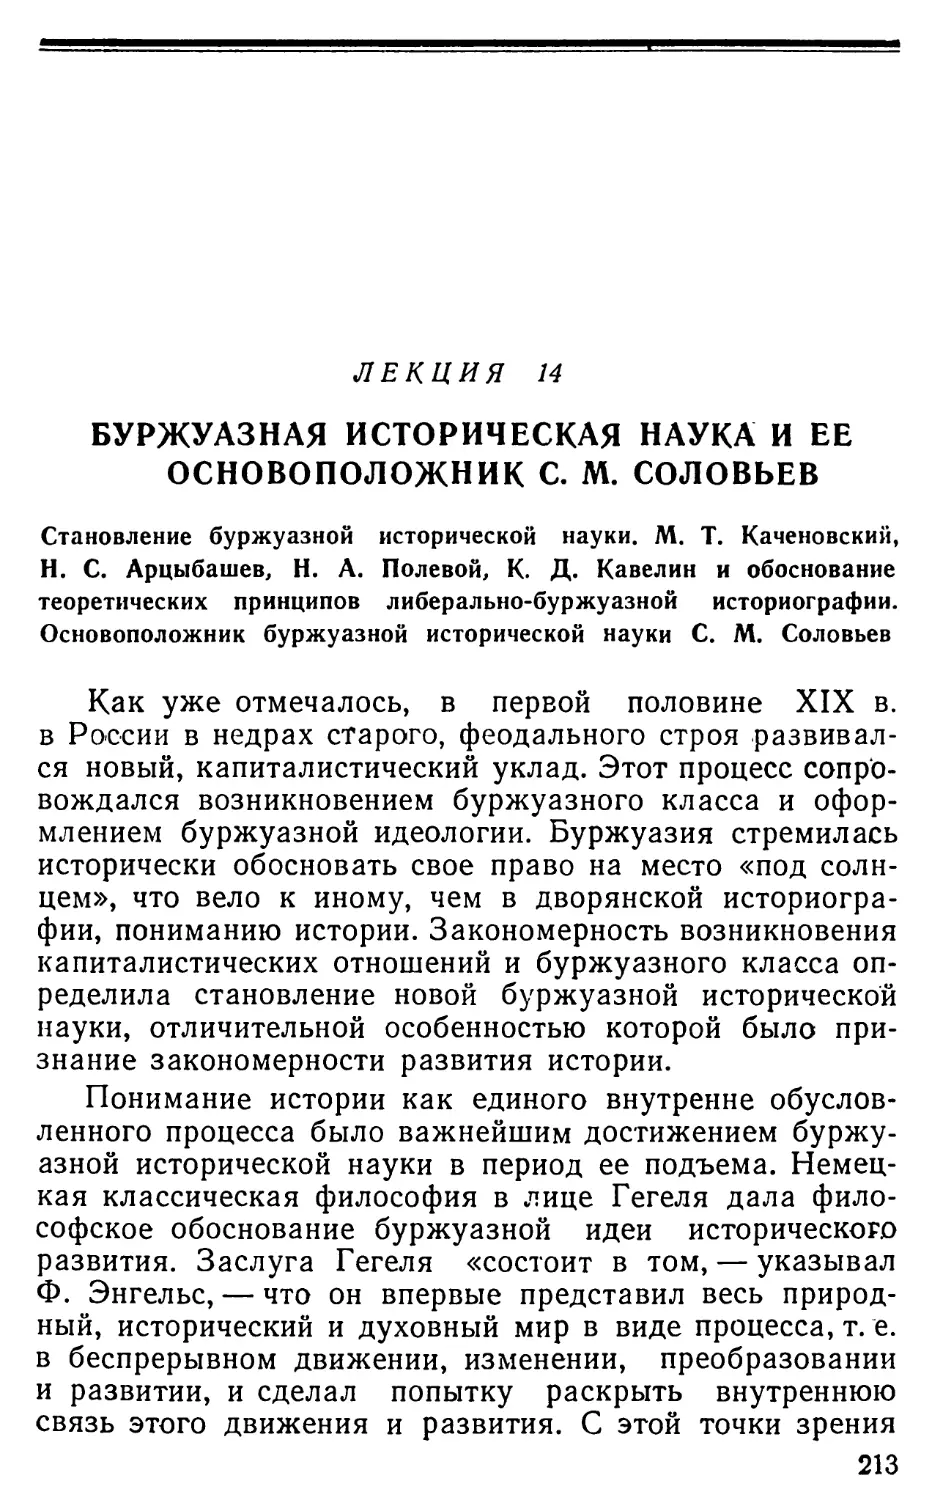 Лекция 14. Буржуазная историческая наука и ее основоположник С.М. Соловьев